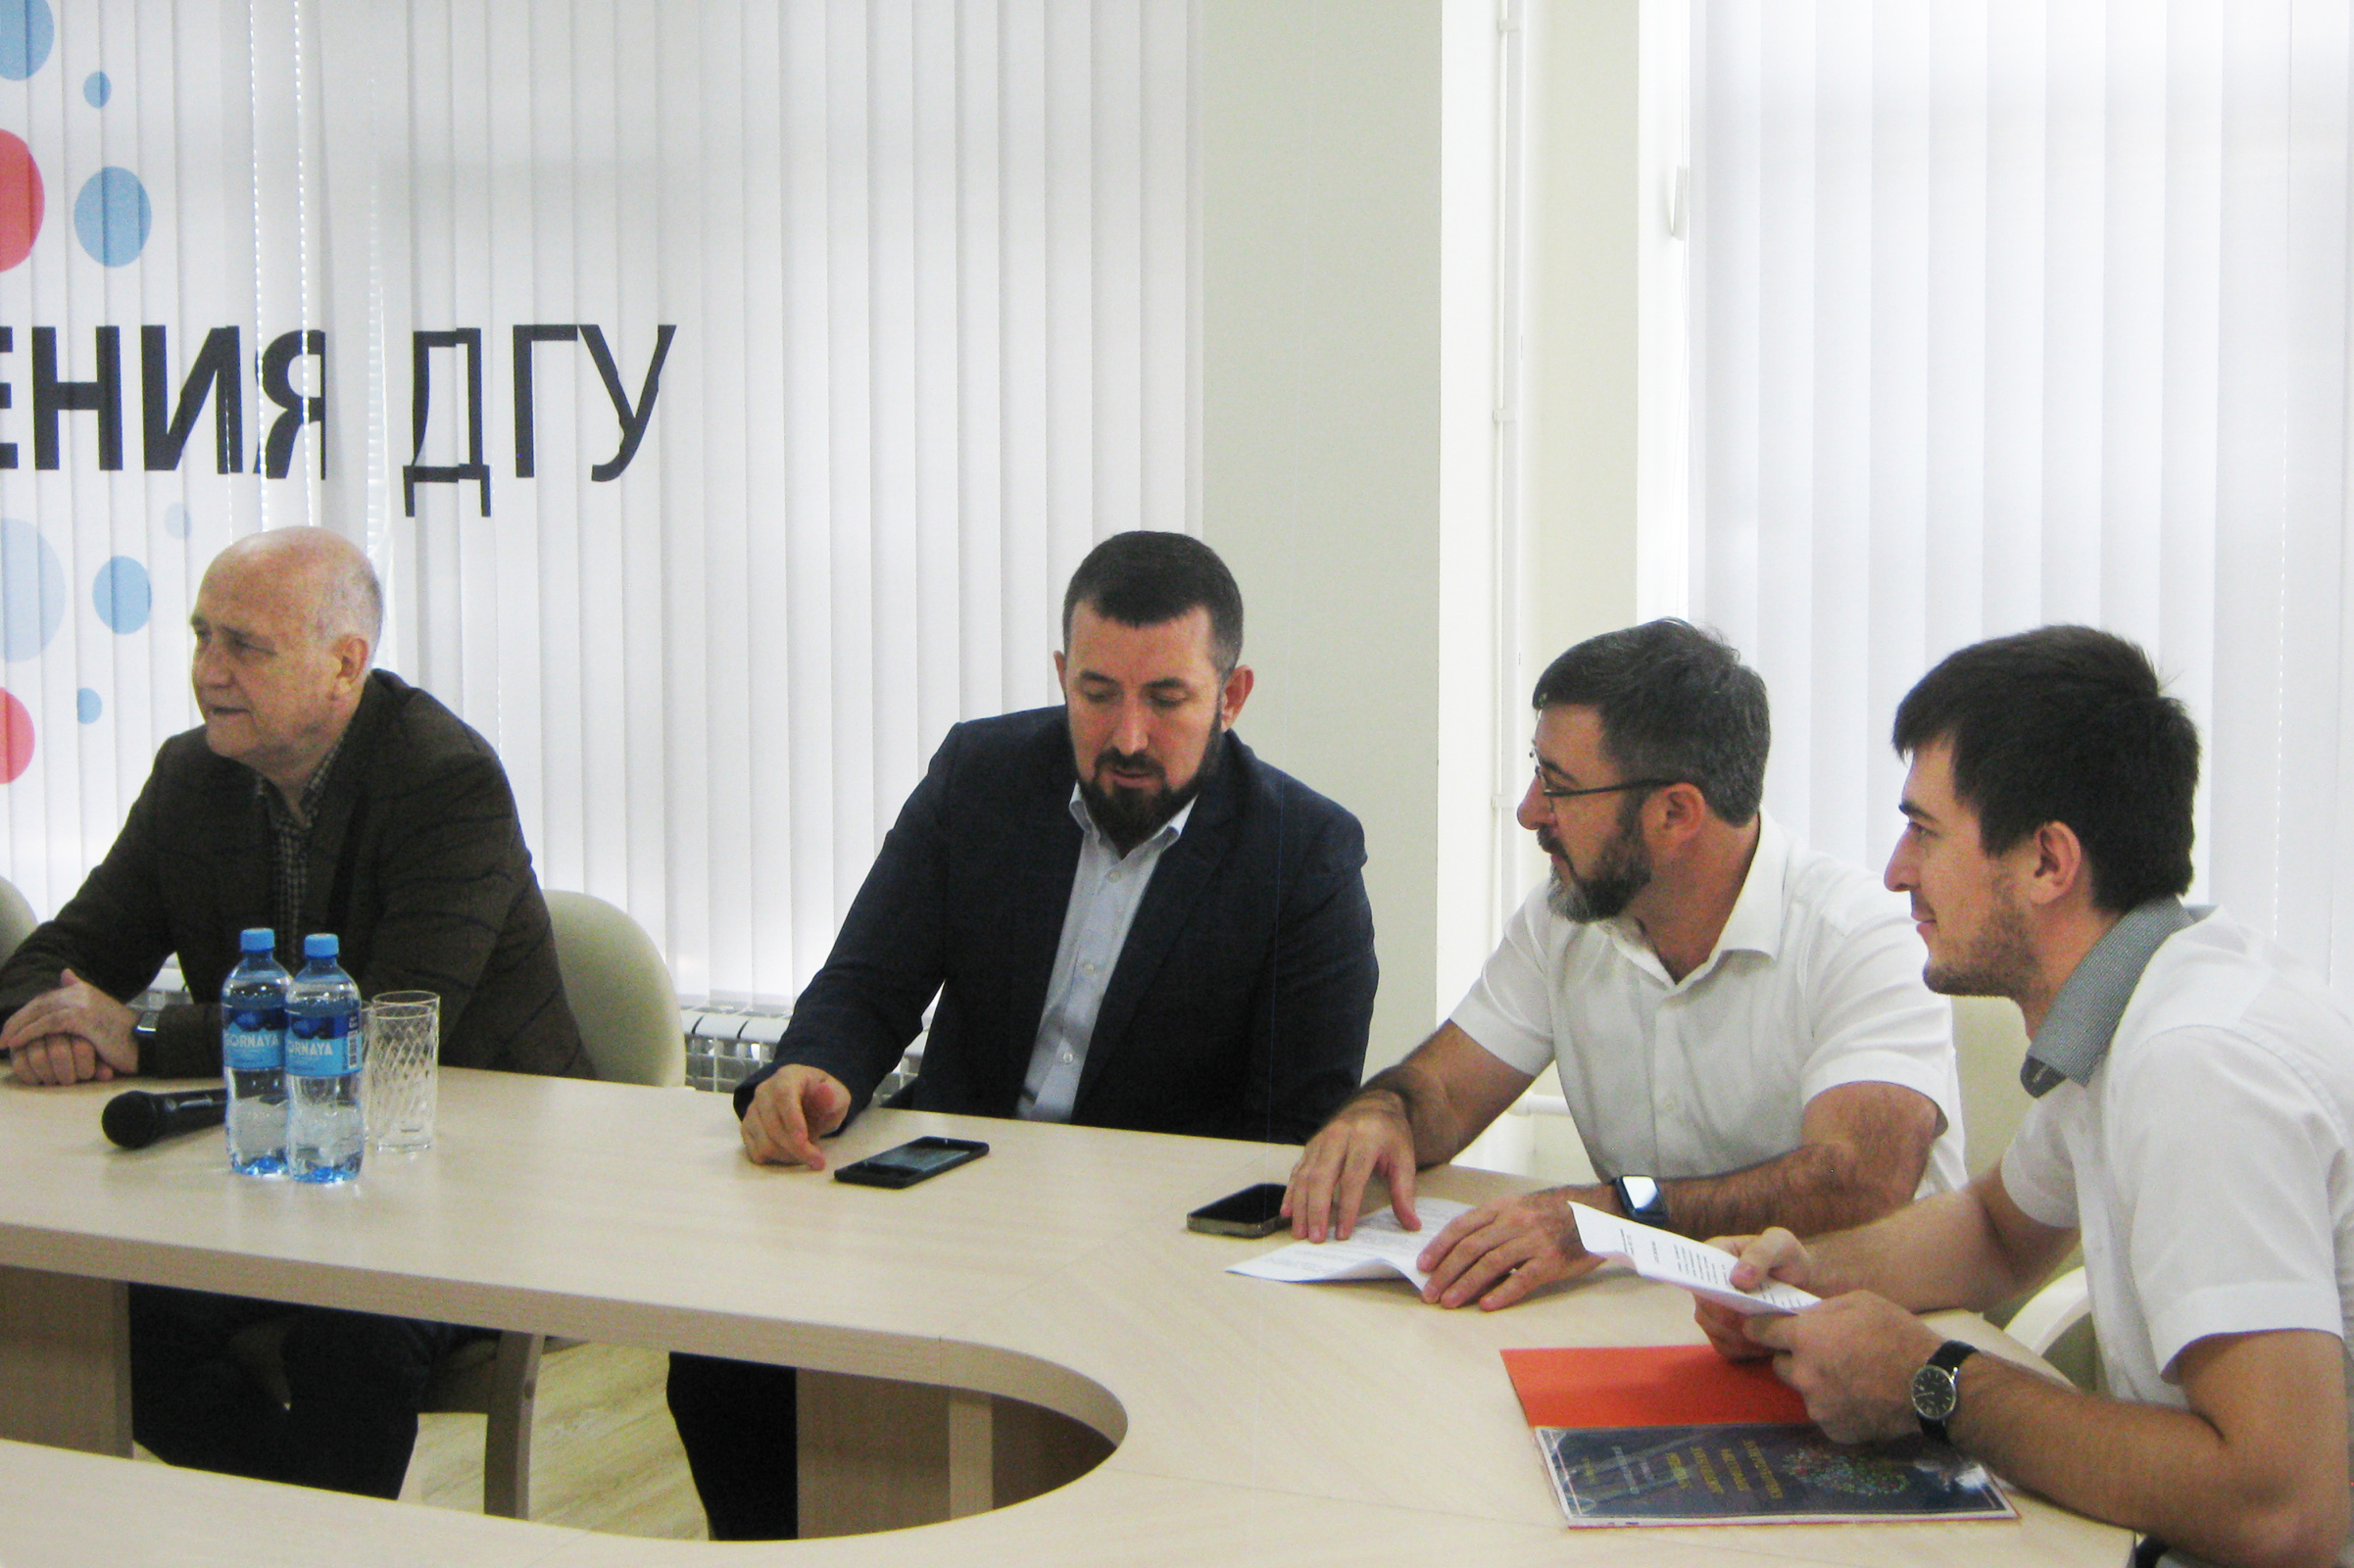 Дискуссия за круглым столом. Фото: Дагестанское отделение РГО